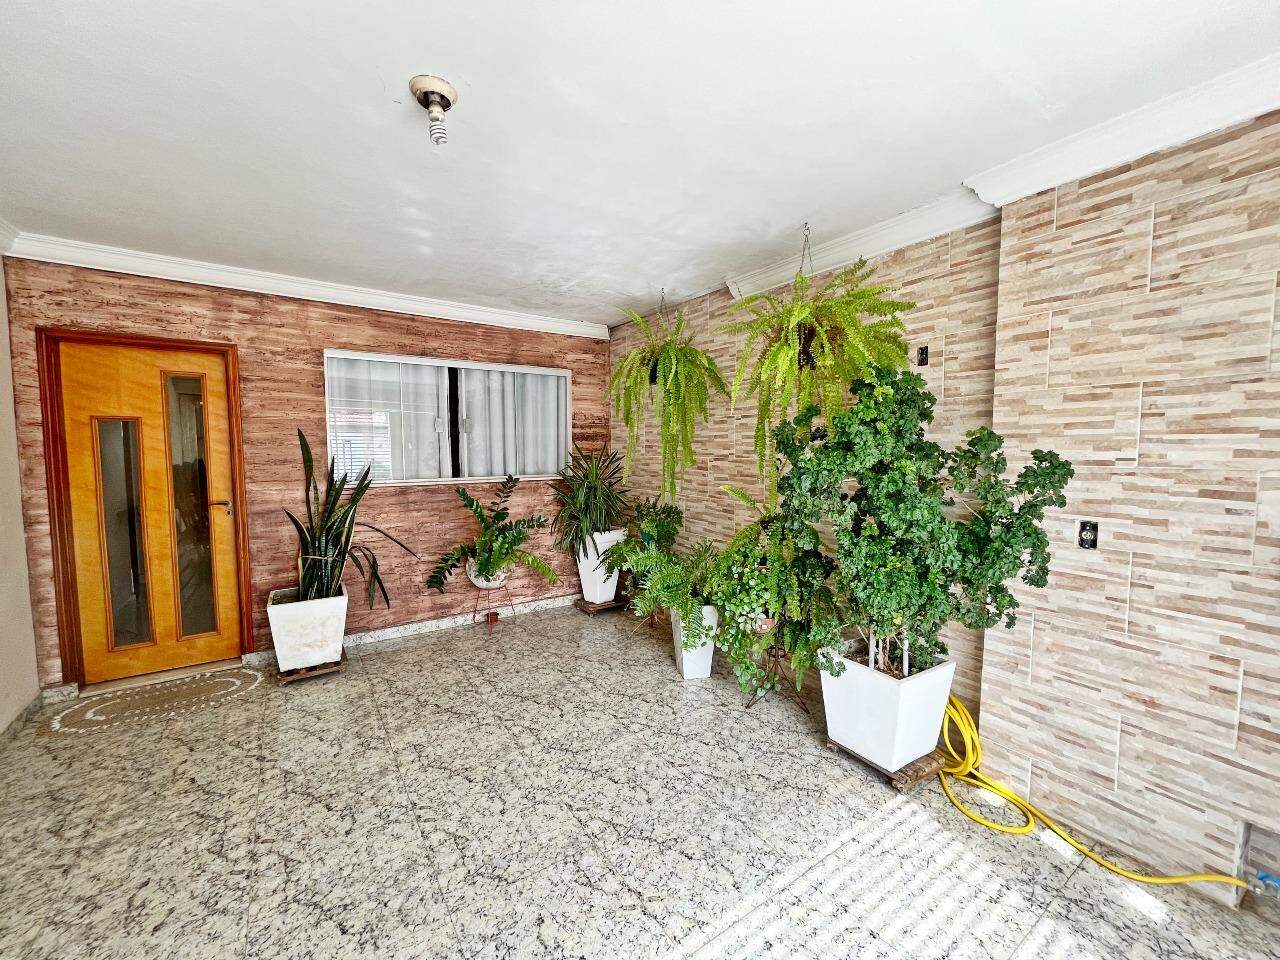 Casa à venda, 2 quartos, sendo 1 suíte, 2 vagas, no bairro Jardim São Luiz em Piracicaba - SP